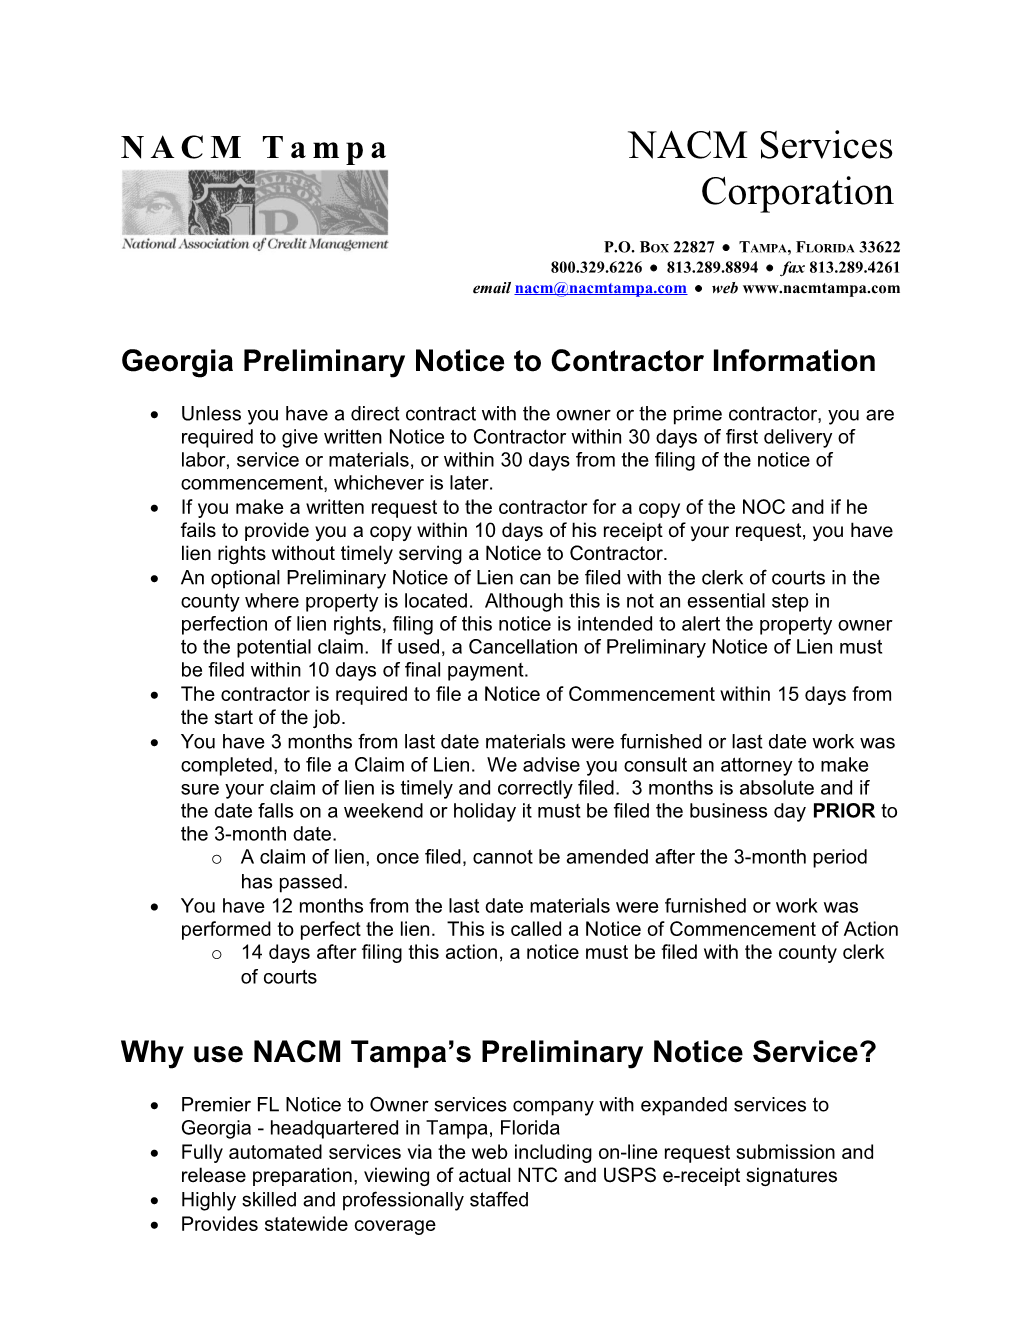 Georgia Preliminary Notice to Contractor Information